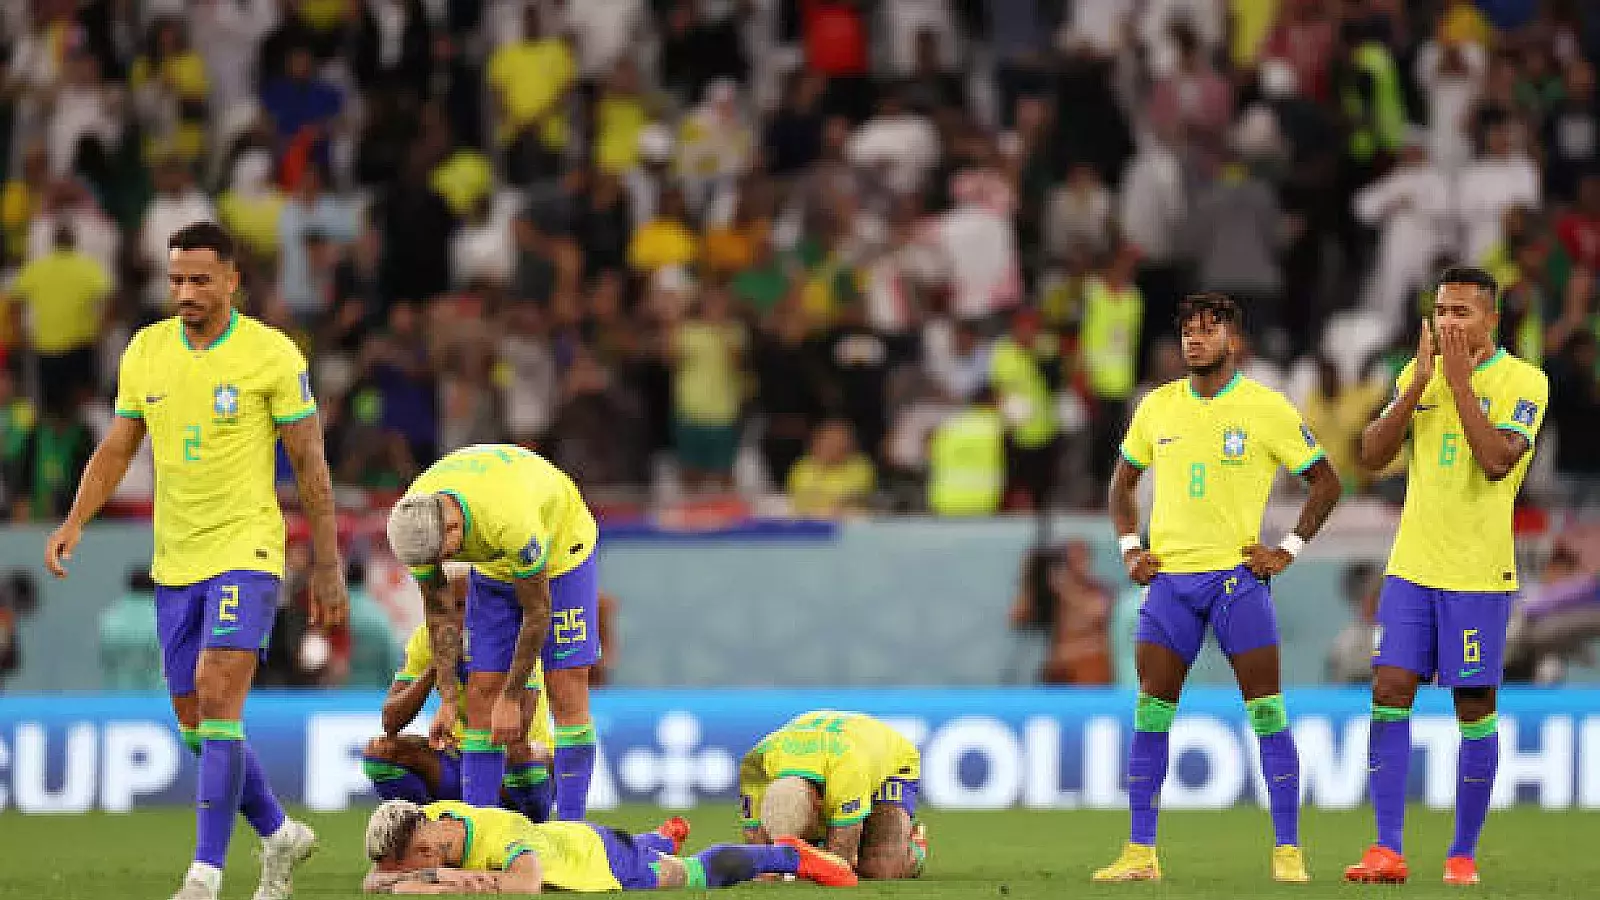 Brasil queda eliminado tras caer ante Croacia en los cuartos de final en la tanda de penales